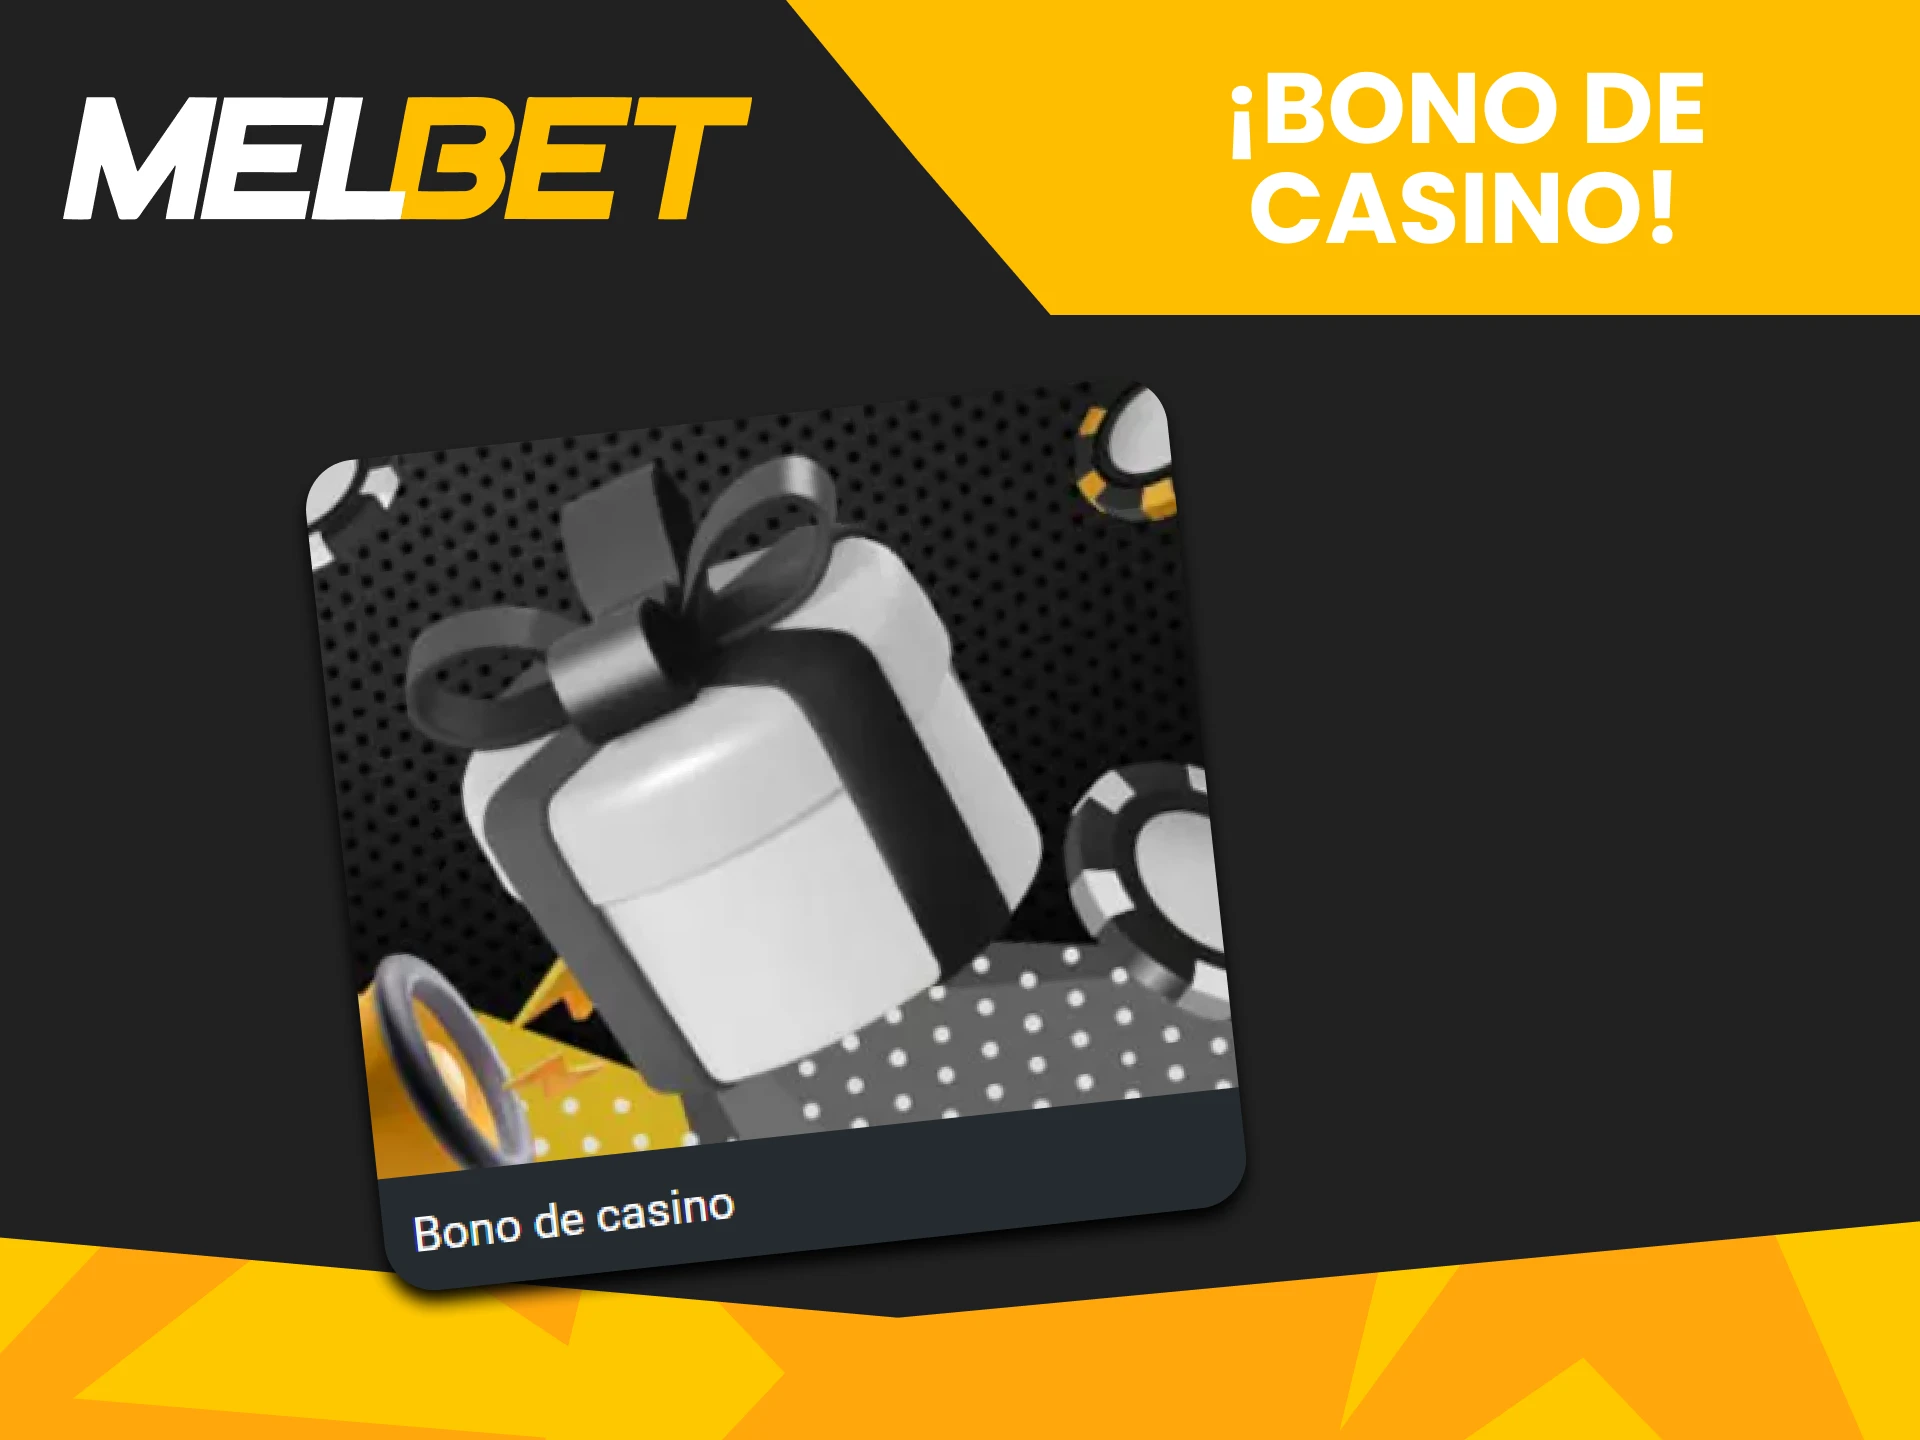 Melbet ofrece bonos de casino.